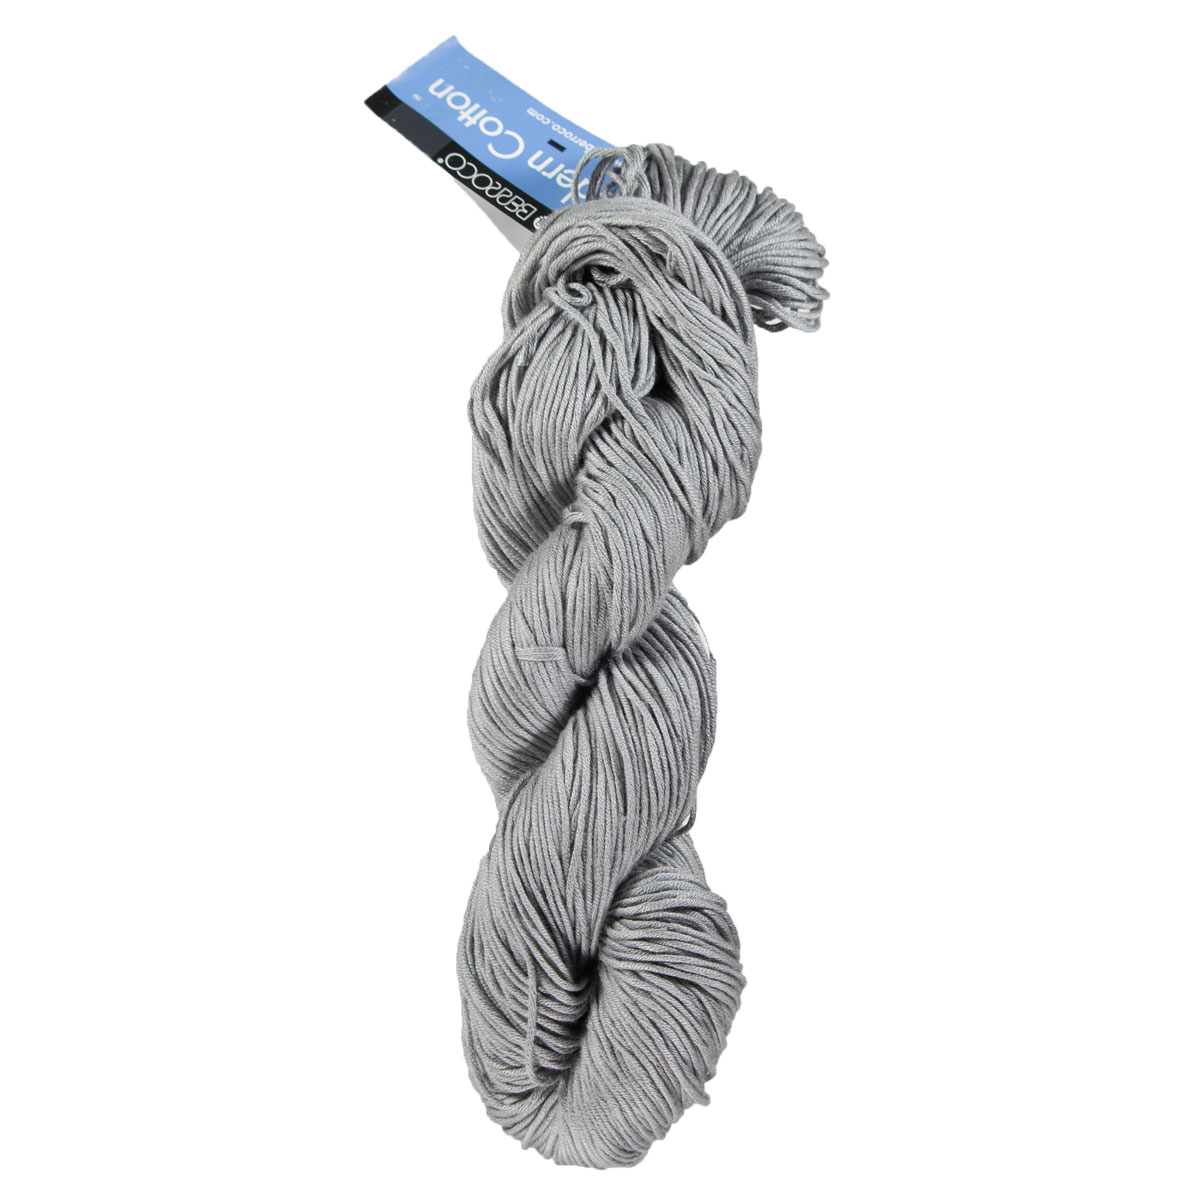 Knitter's Pride Aluminum Gold Crochet Hooks Needles - G (4.0mm